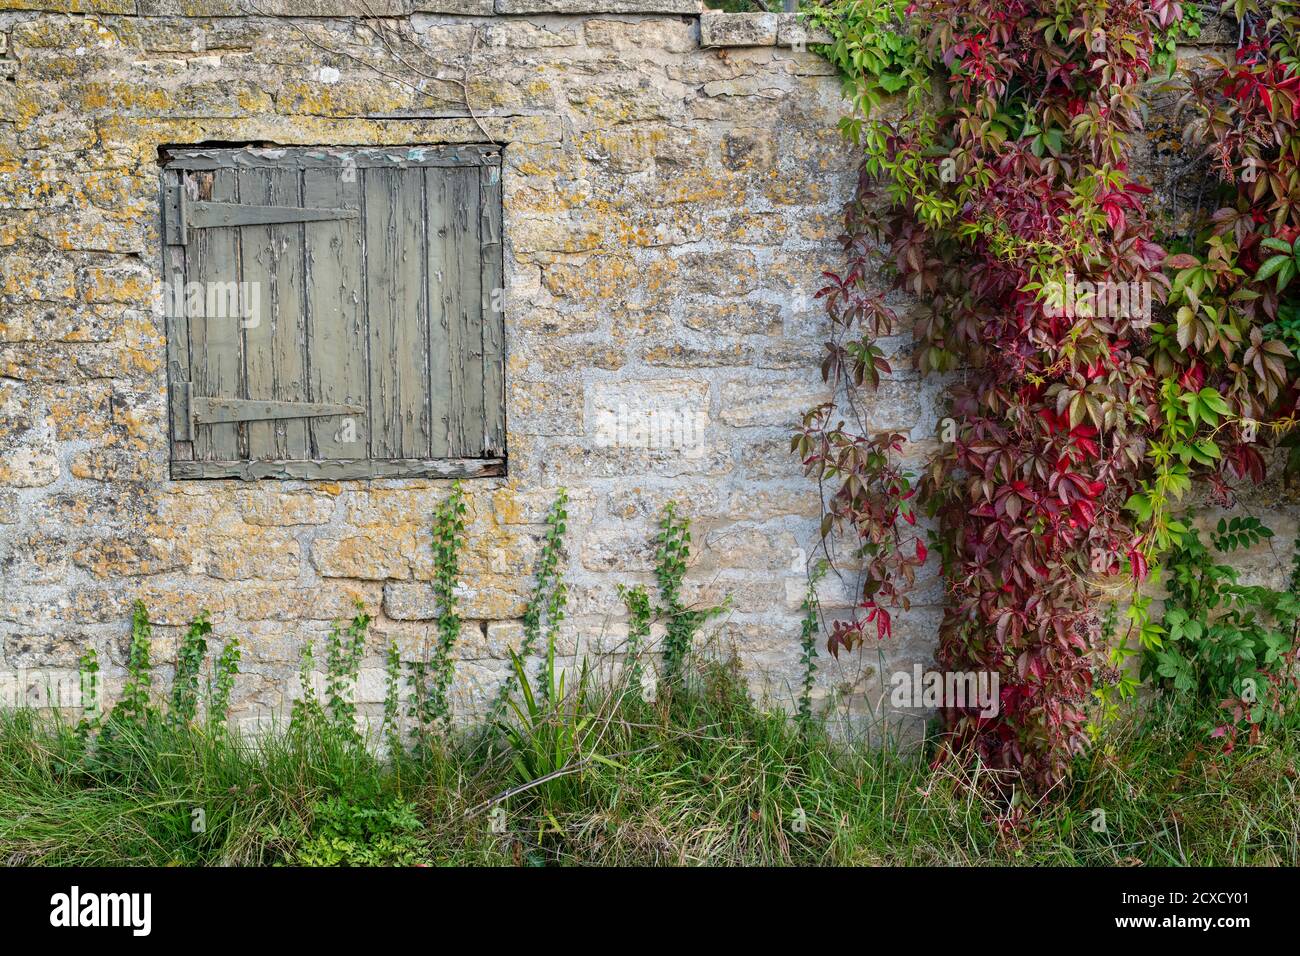 Parthenocissus quinquefolia. Virginia super-réducteur avec une ancienne porte en bois carrée sur un mur en pierre de cotswold. Taynton, Cotswolds, Oxfordshire, Angleterre Banque D'Images